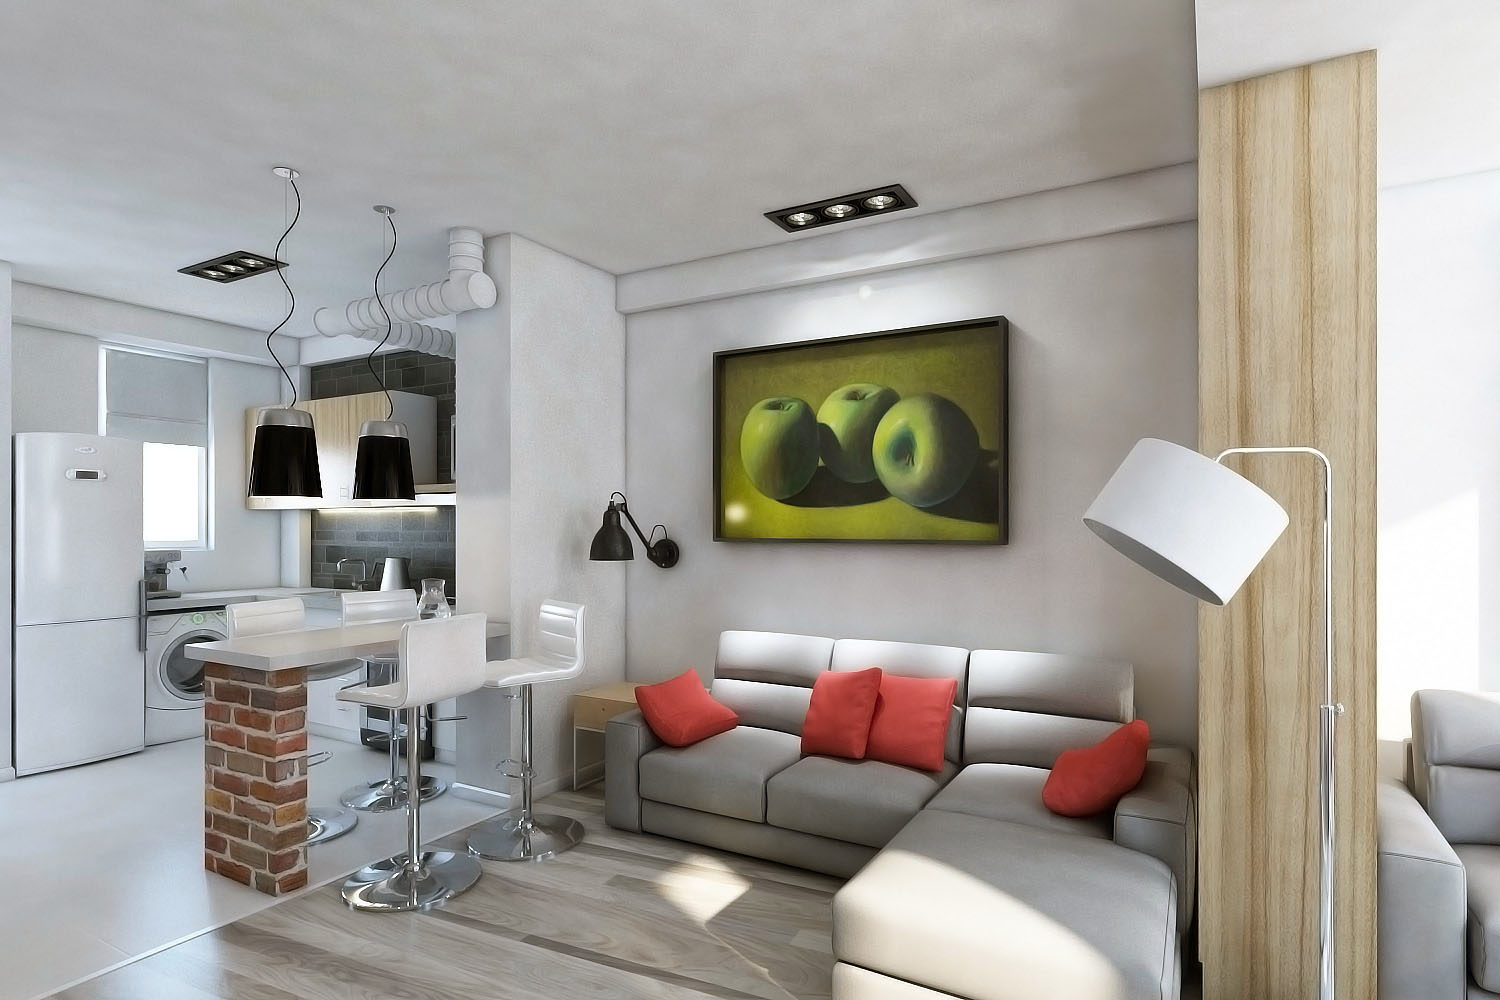 16 sq. m living room interior ideas